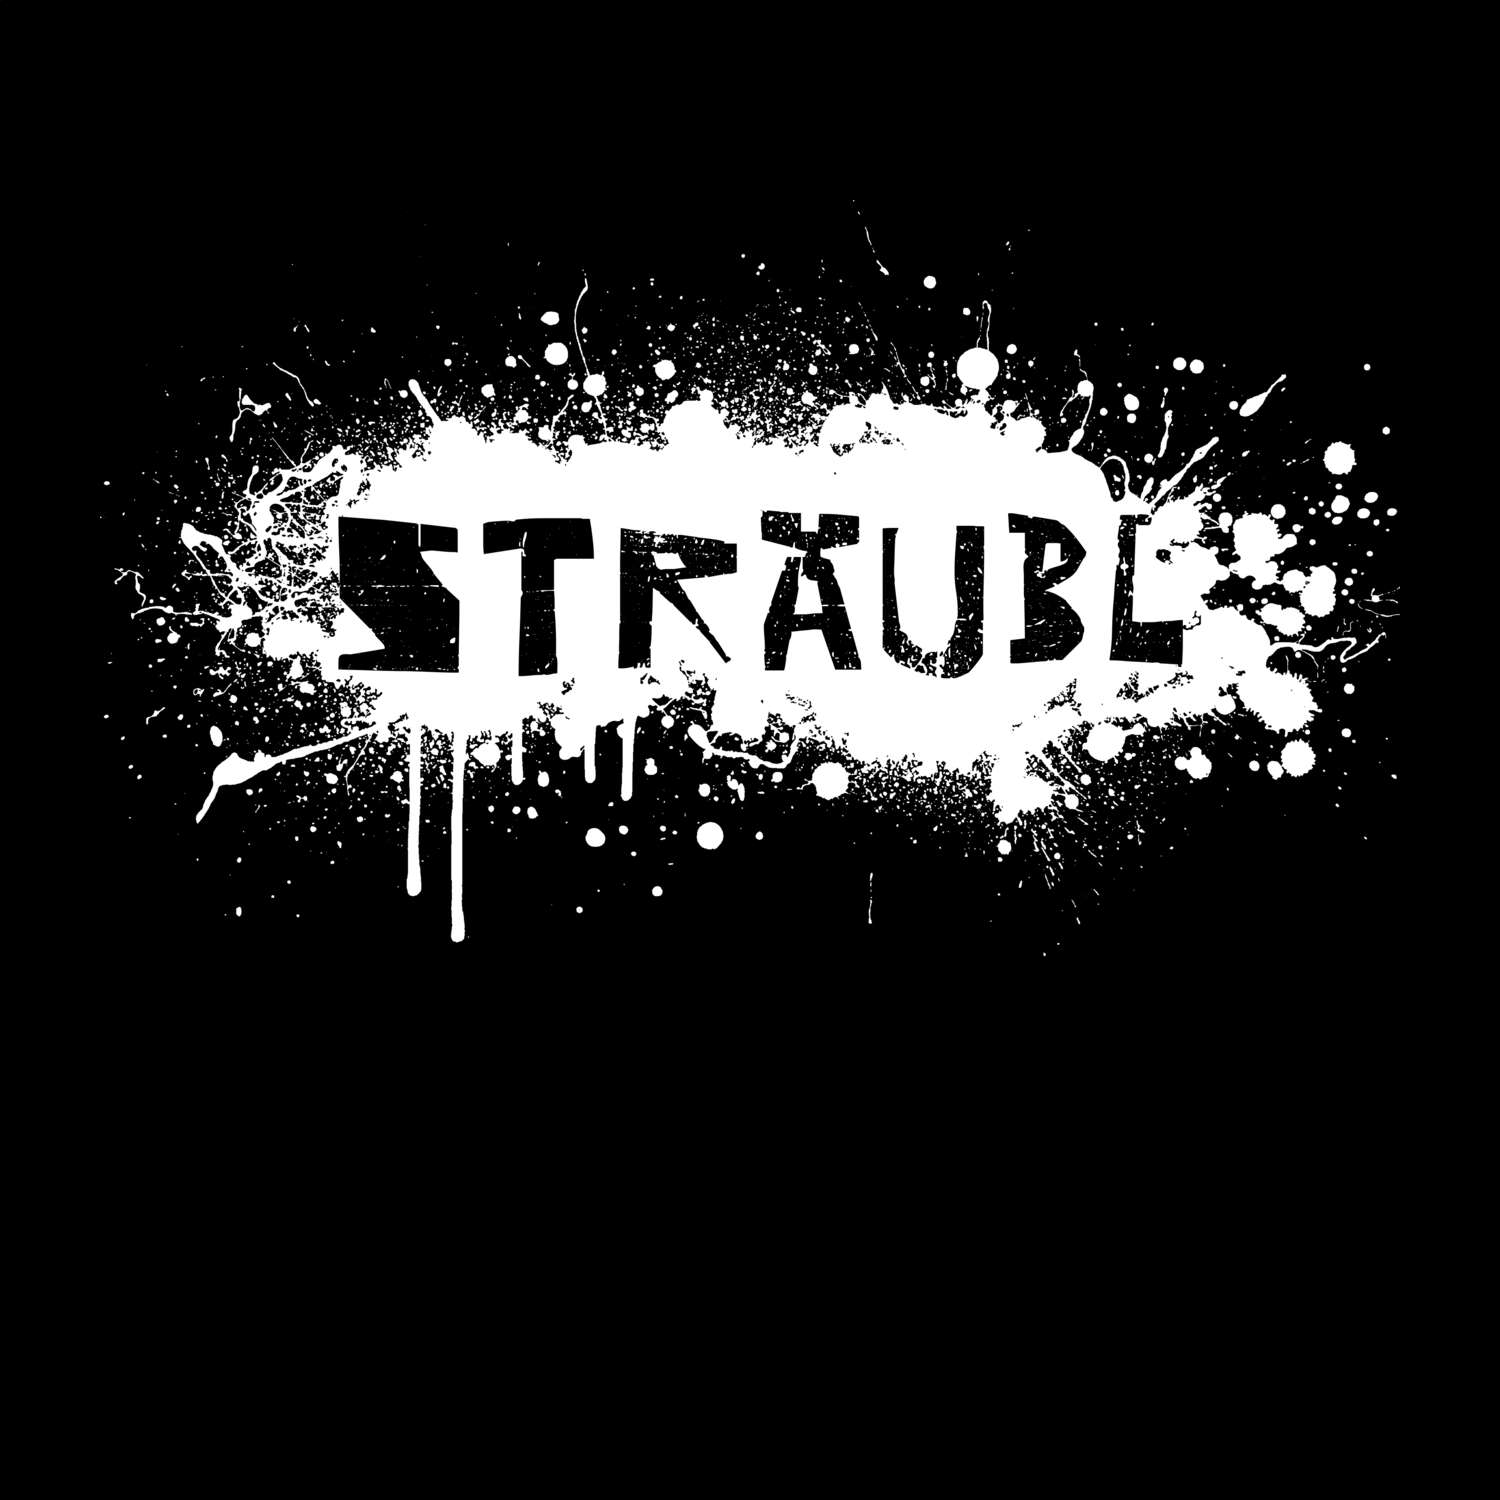 Sträubl T-Shirt »Paint Splash Punk«